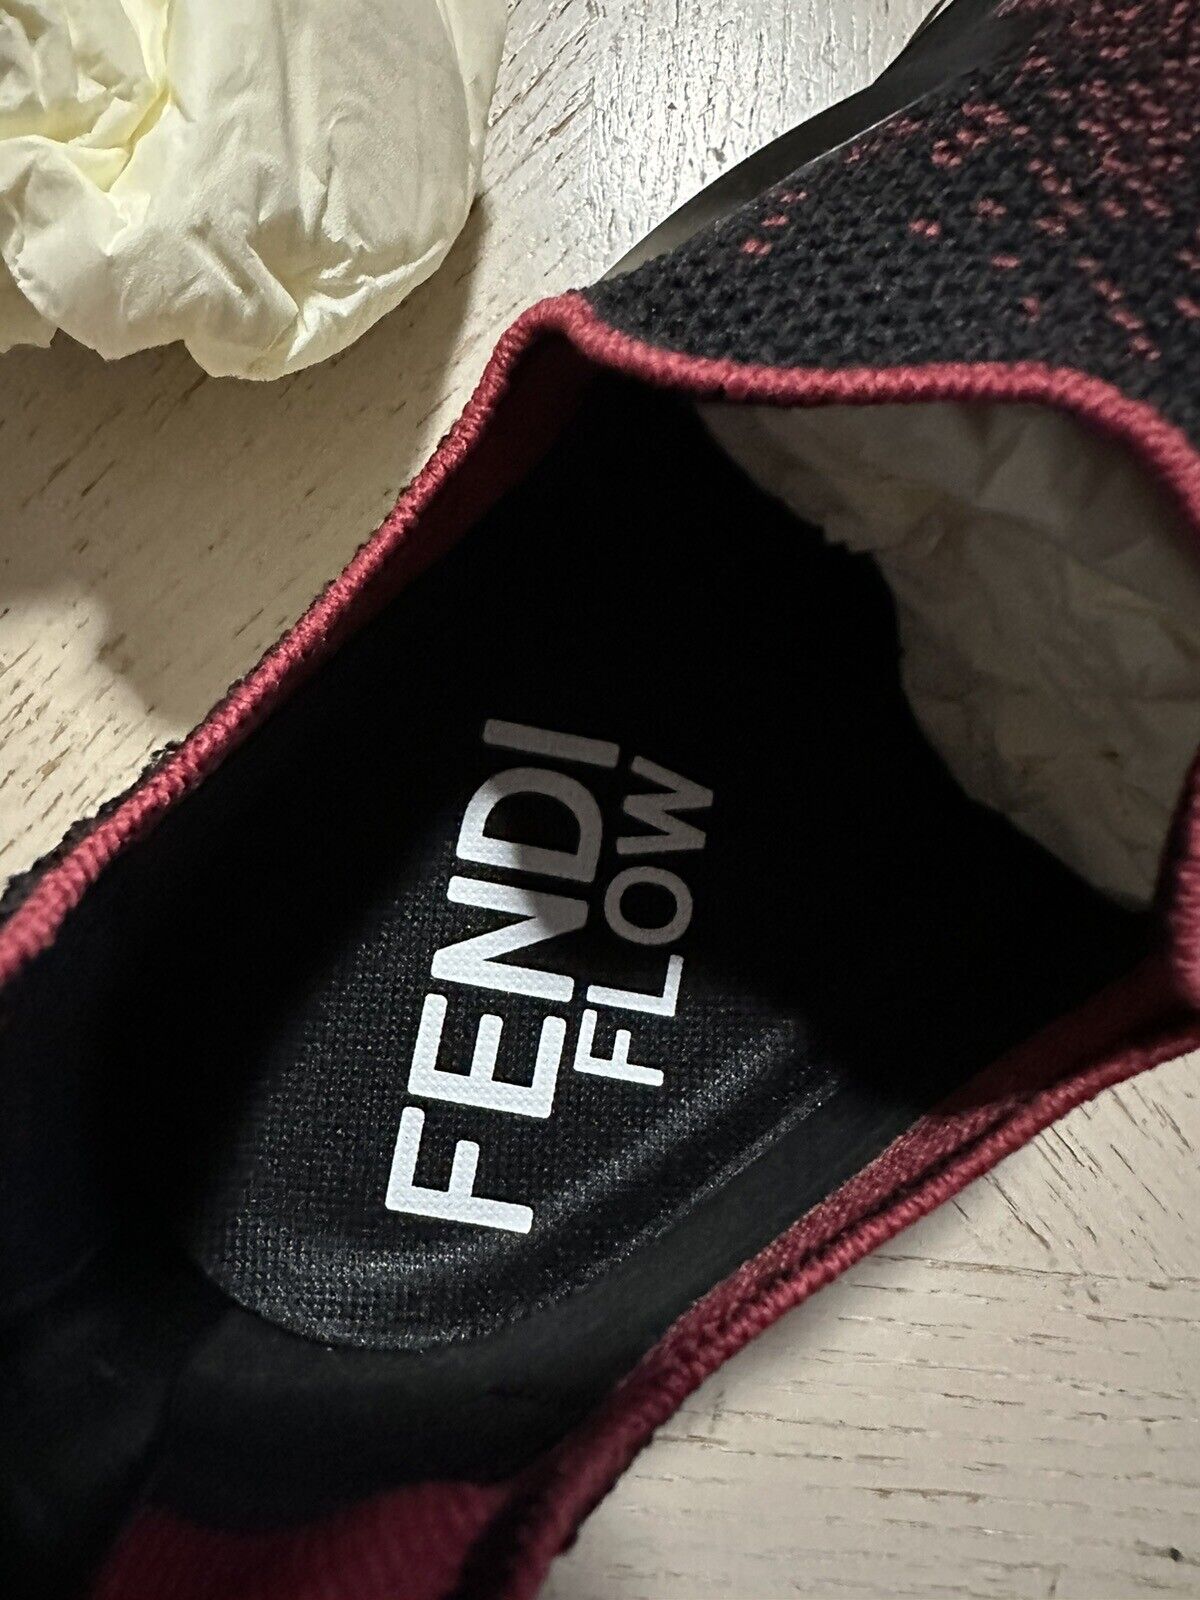 Fendi Men Flow Knit Low Top Sneakers Rubin/Black 10 US/9 UK New $1050